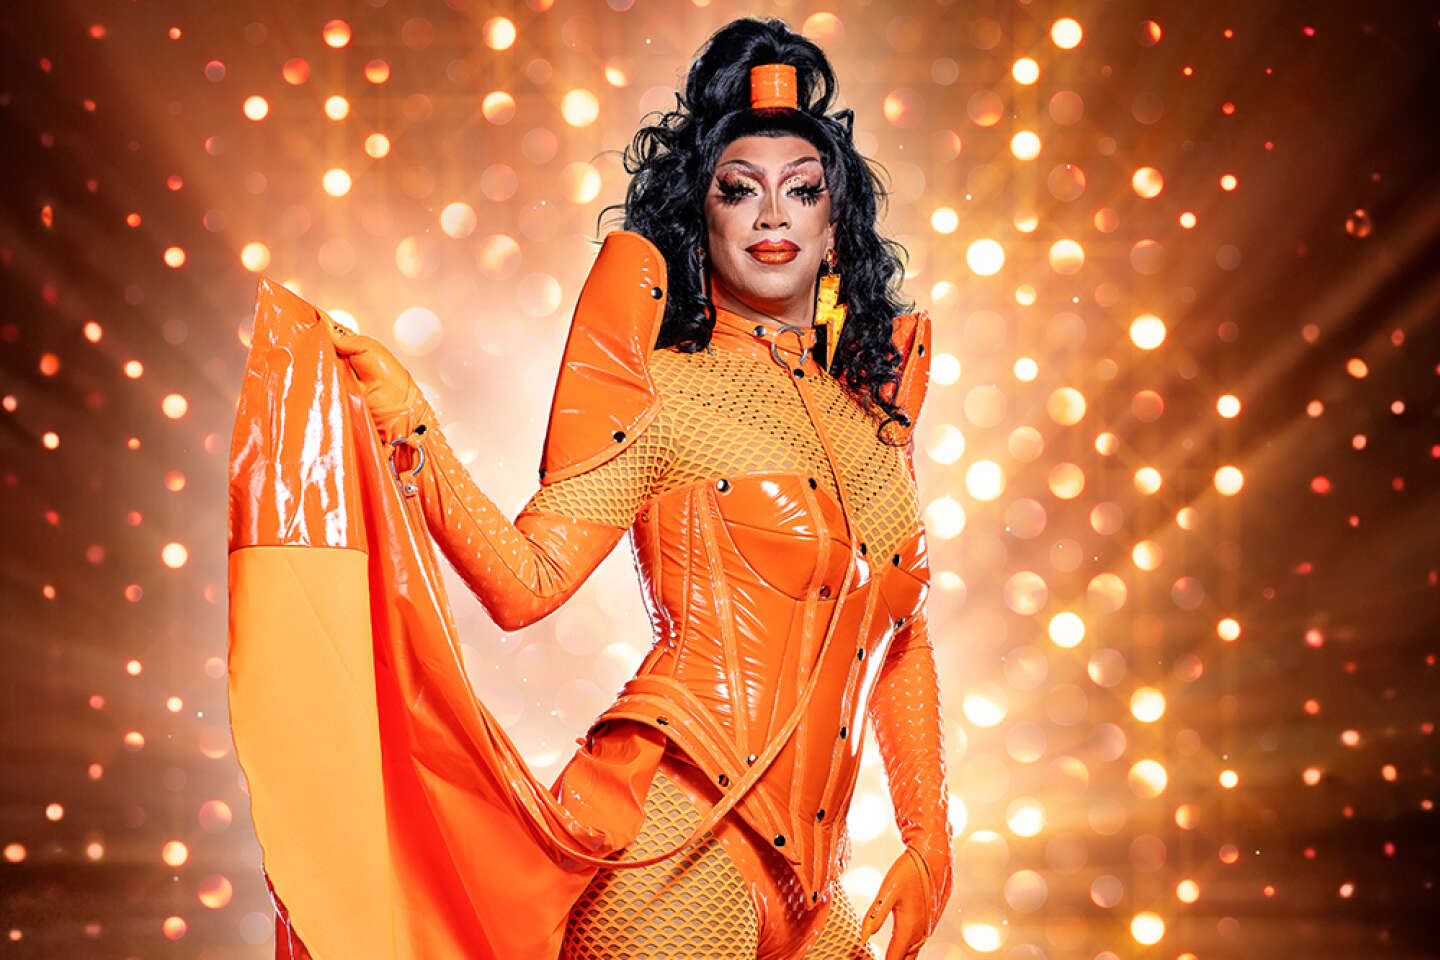 En Flandre, le député Sammy Mahdi remporte un concours de drag-queen